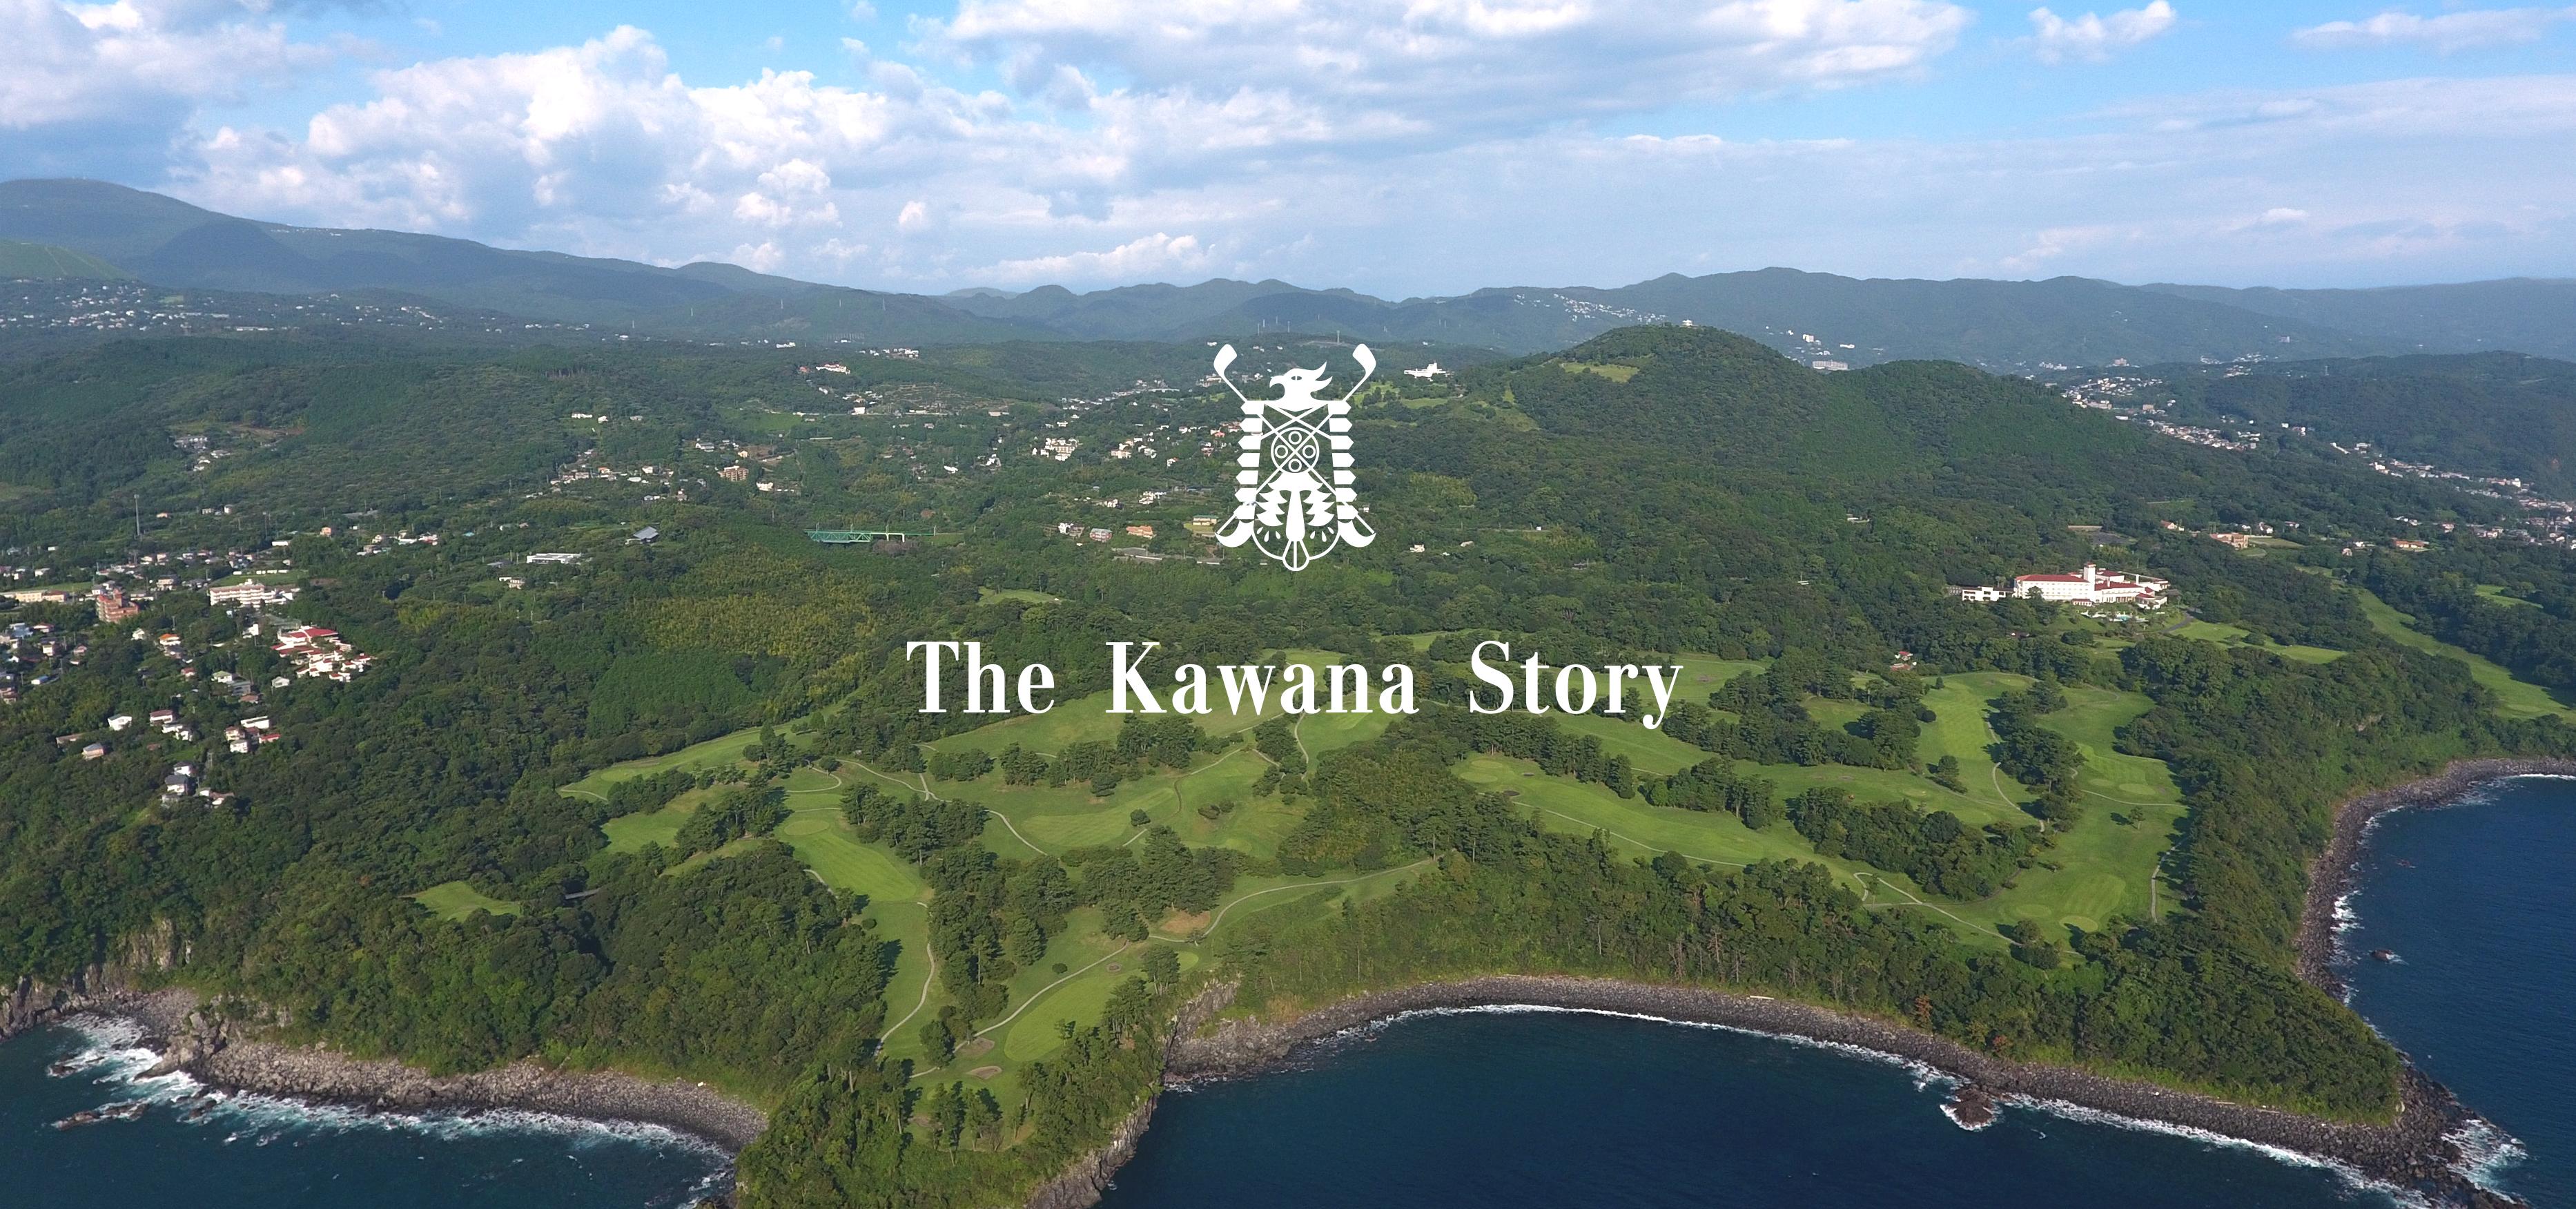 The Kawana Story